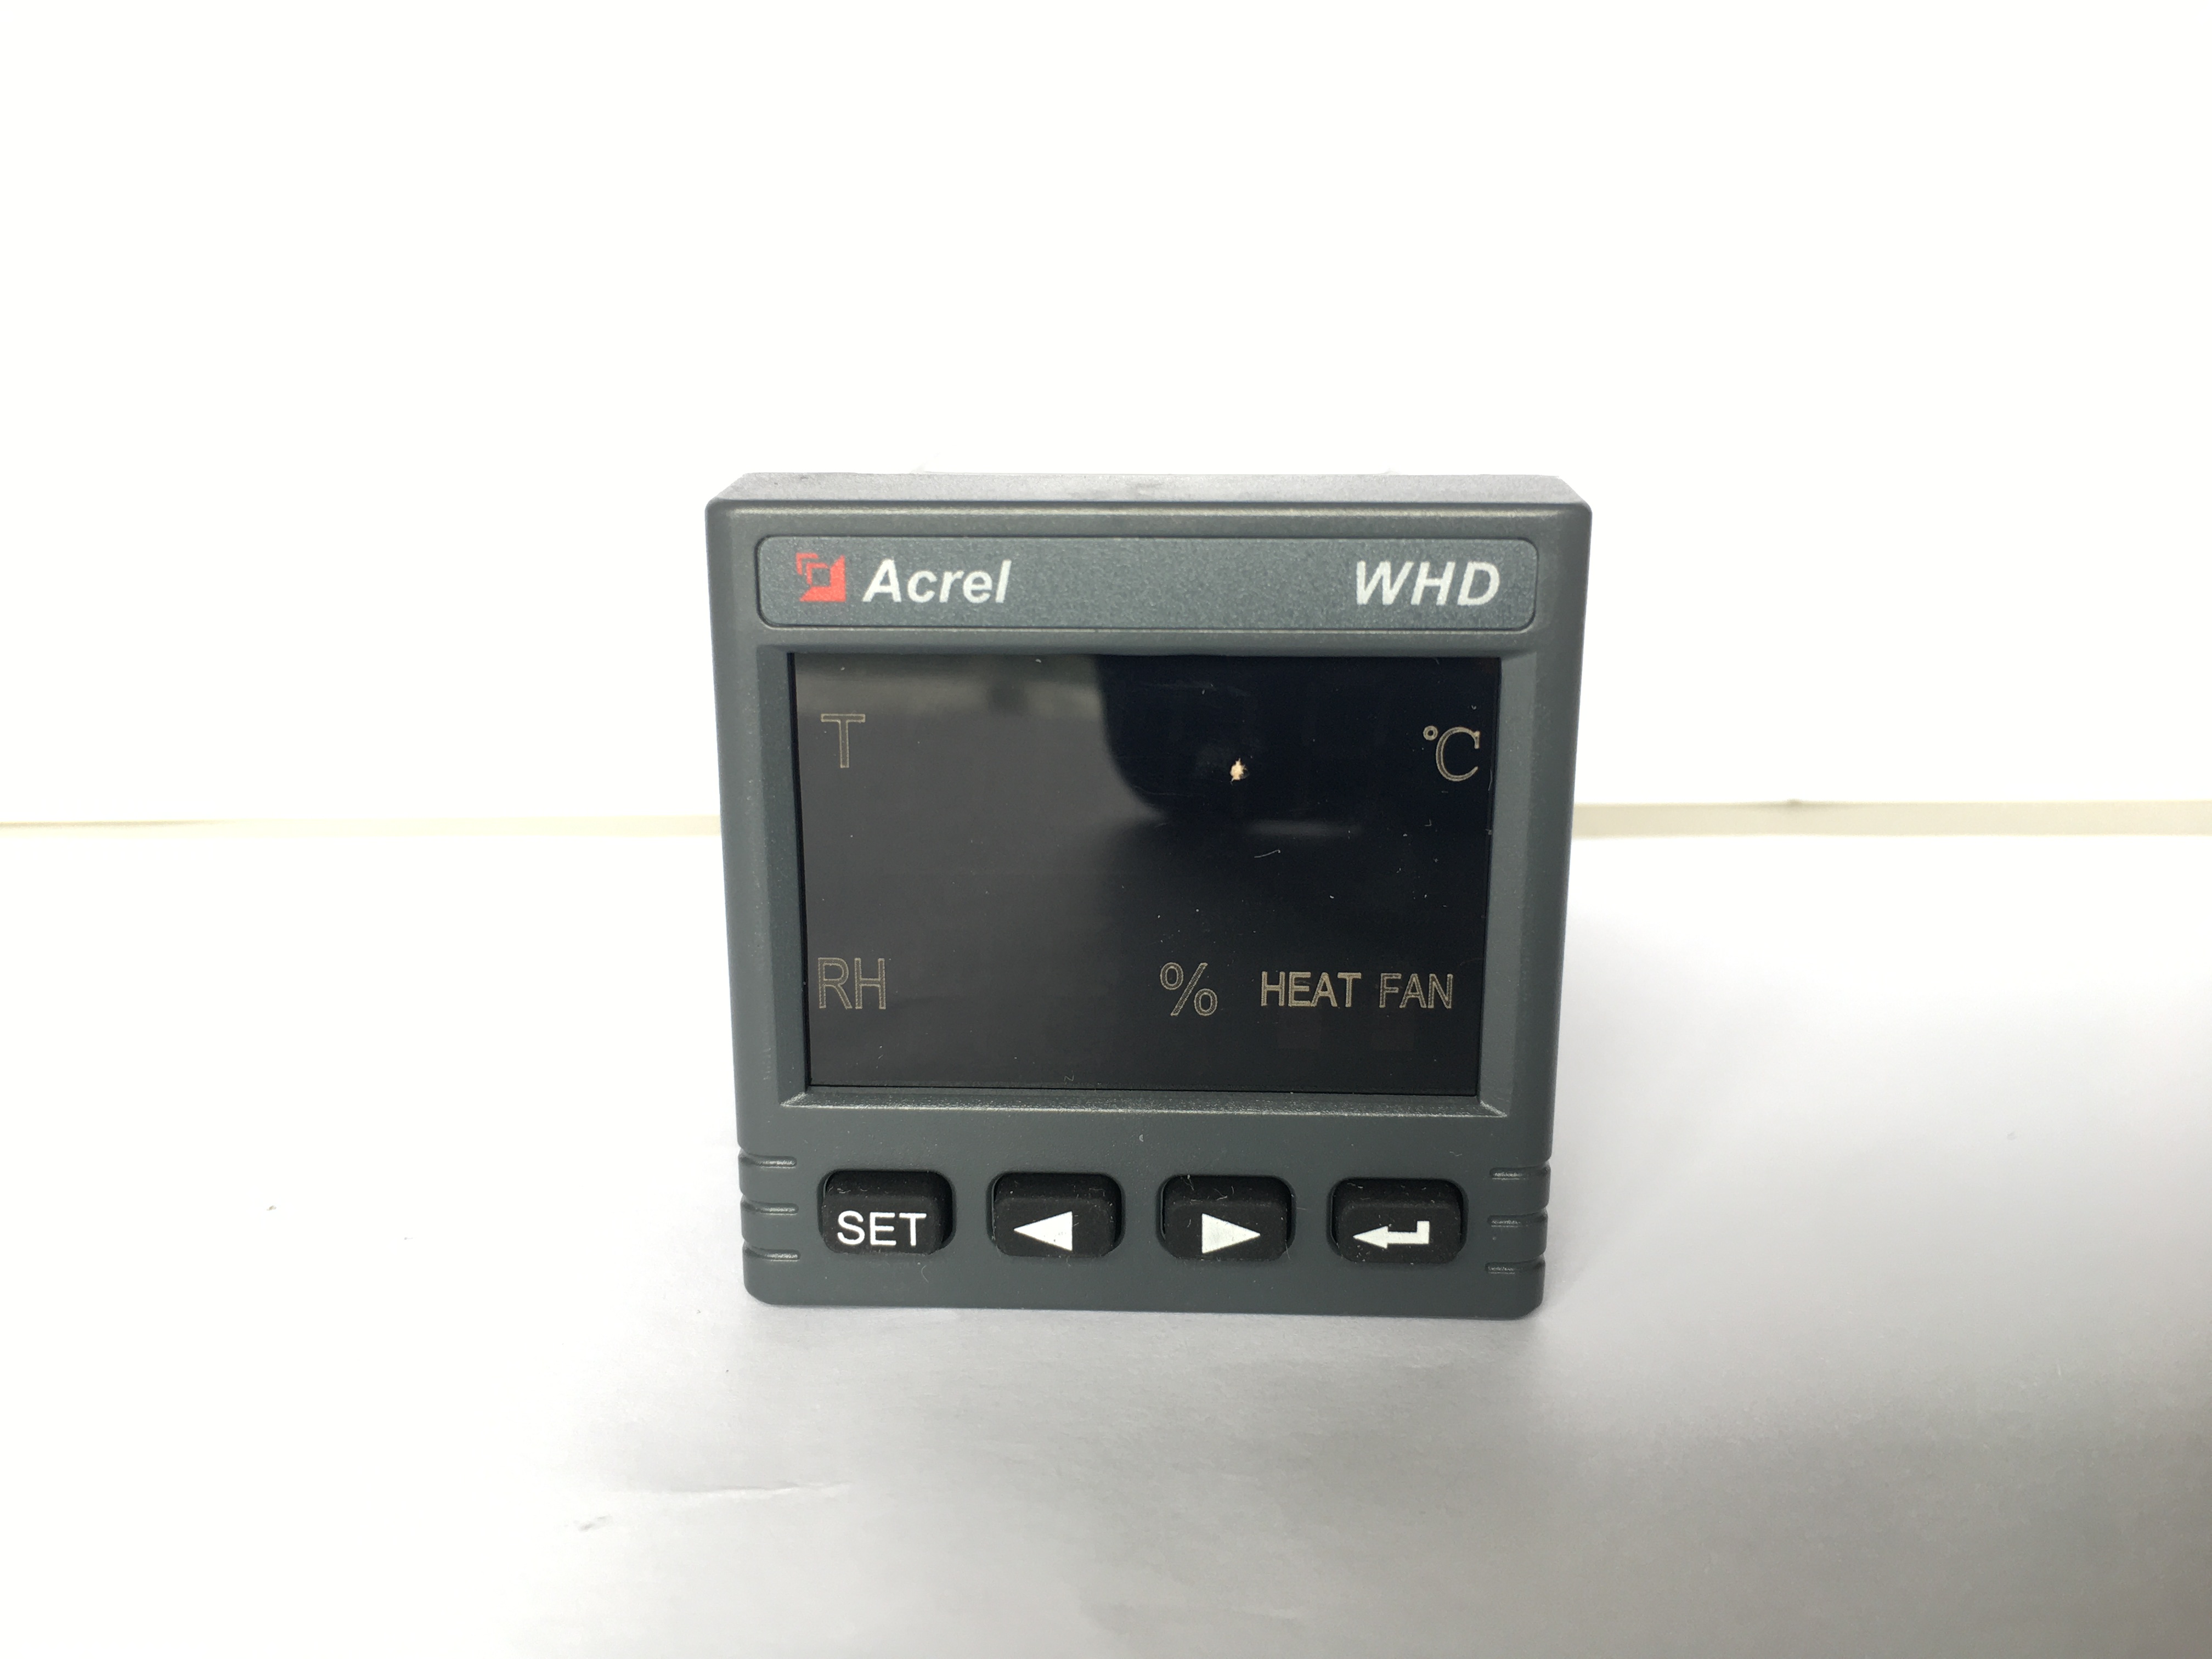 安科瑞 WHD48-11/C 智能溫濕度控制器 中高壓開關柜溫濕度調節 測量顯示控制1路溫度、1路濕度 1路RS485通訊